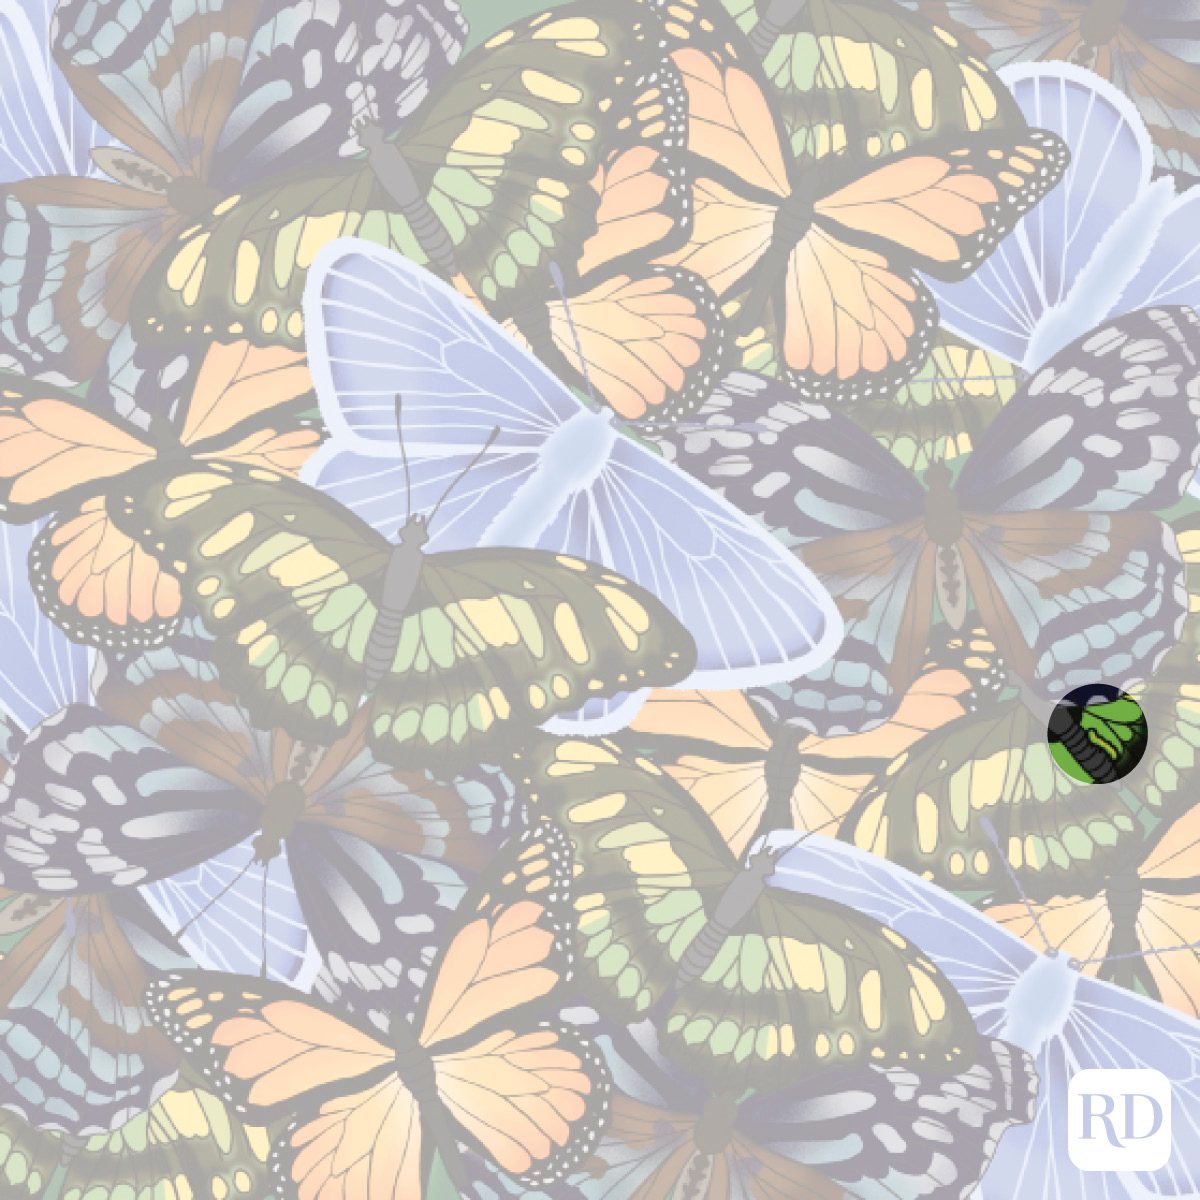 Find The Hidden Caterpillar Among The Butterflies Illustration Answer Key